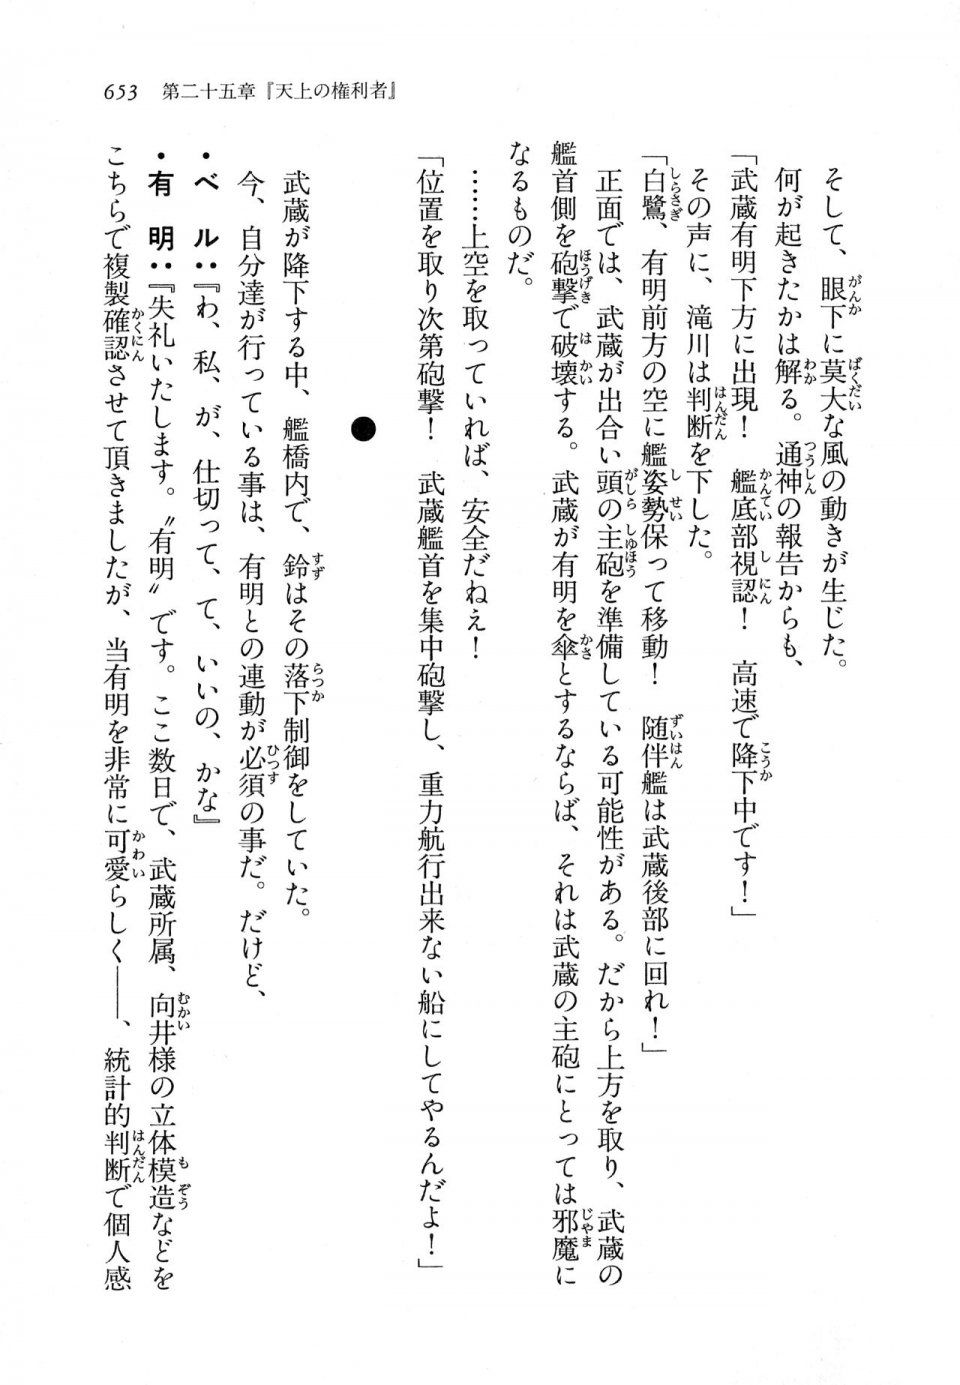 Kyoukai Senjou no Horizon LN Vol 11(5A) - Photo #653